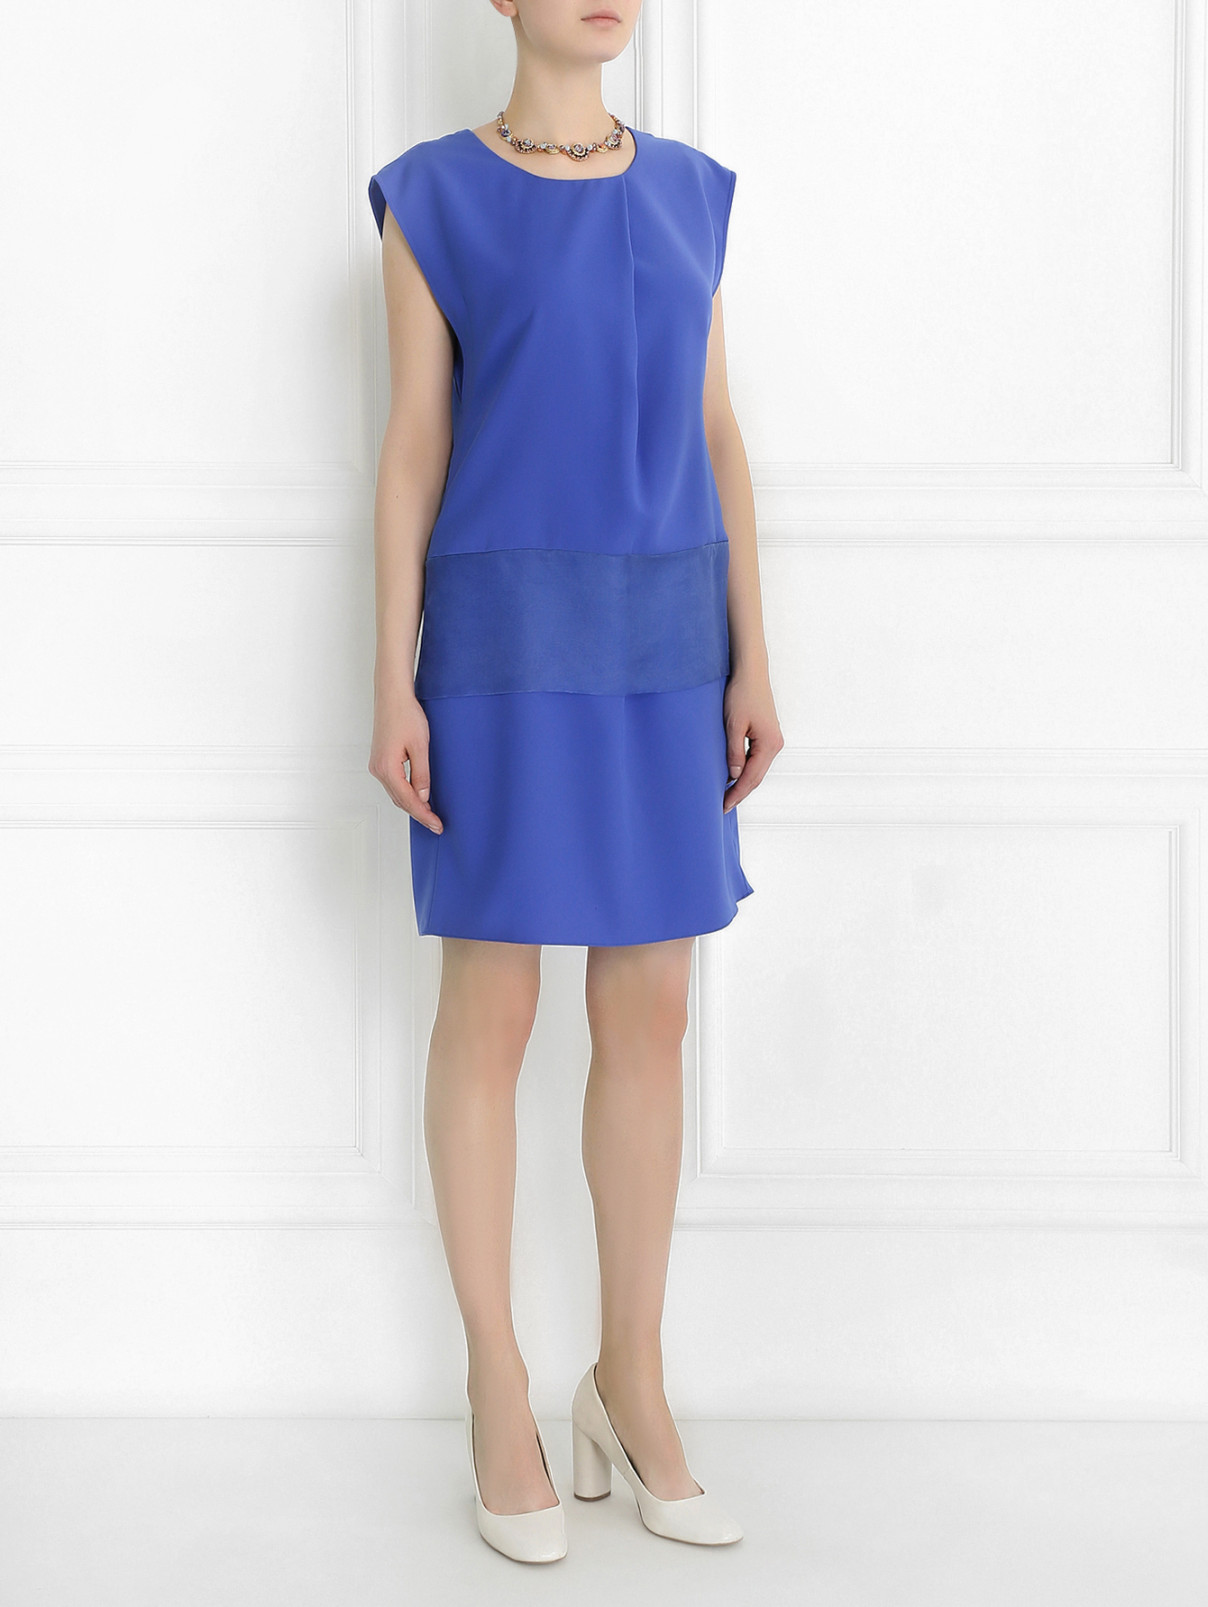 Платье-мини свободного кроя с драпировкой Armani Collezioni  –  Модель Общий вид  – Цвет:  Синий